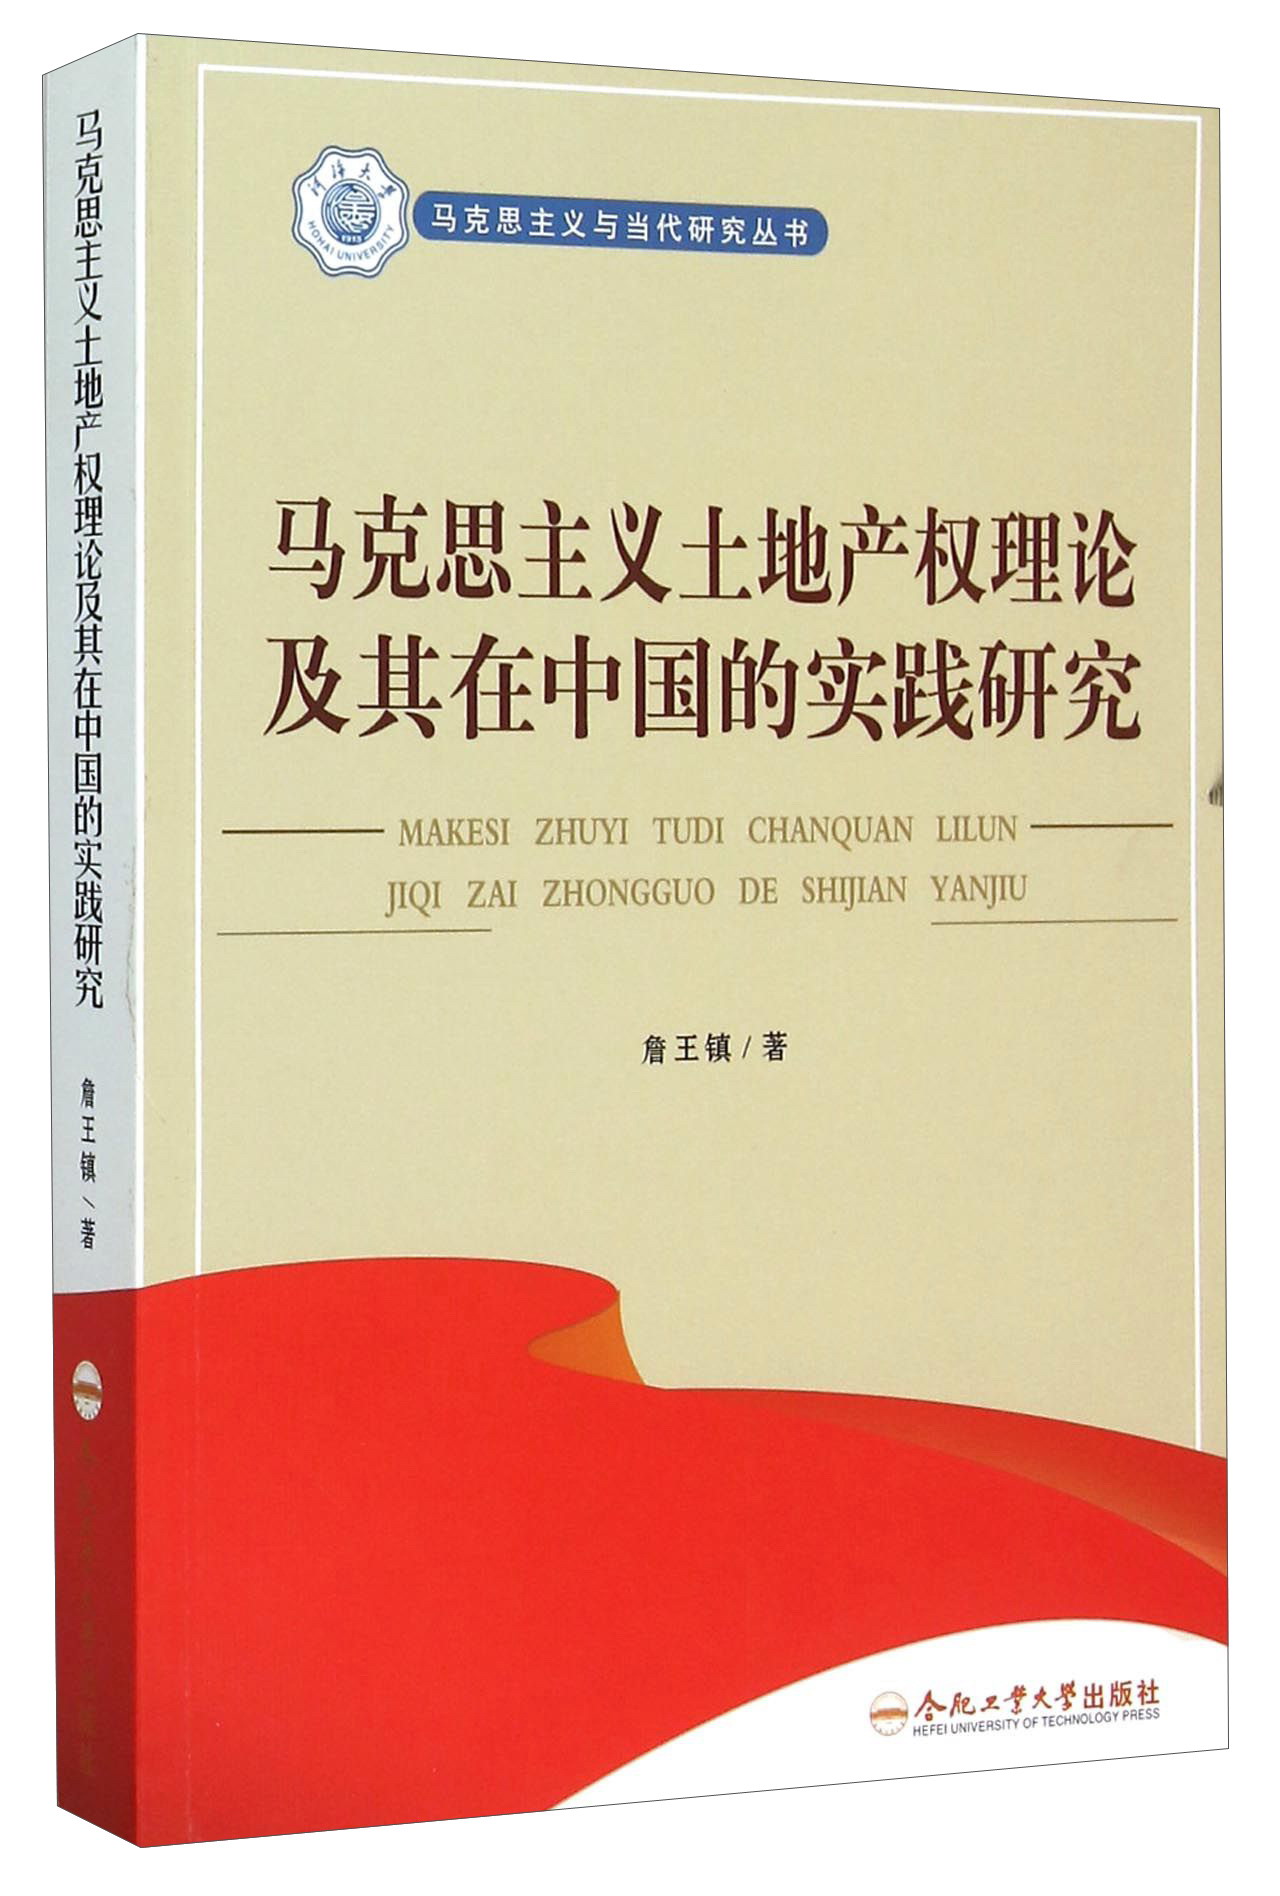 马克思主义土地产权理论及其在中国的实践研究